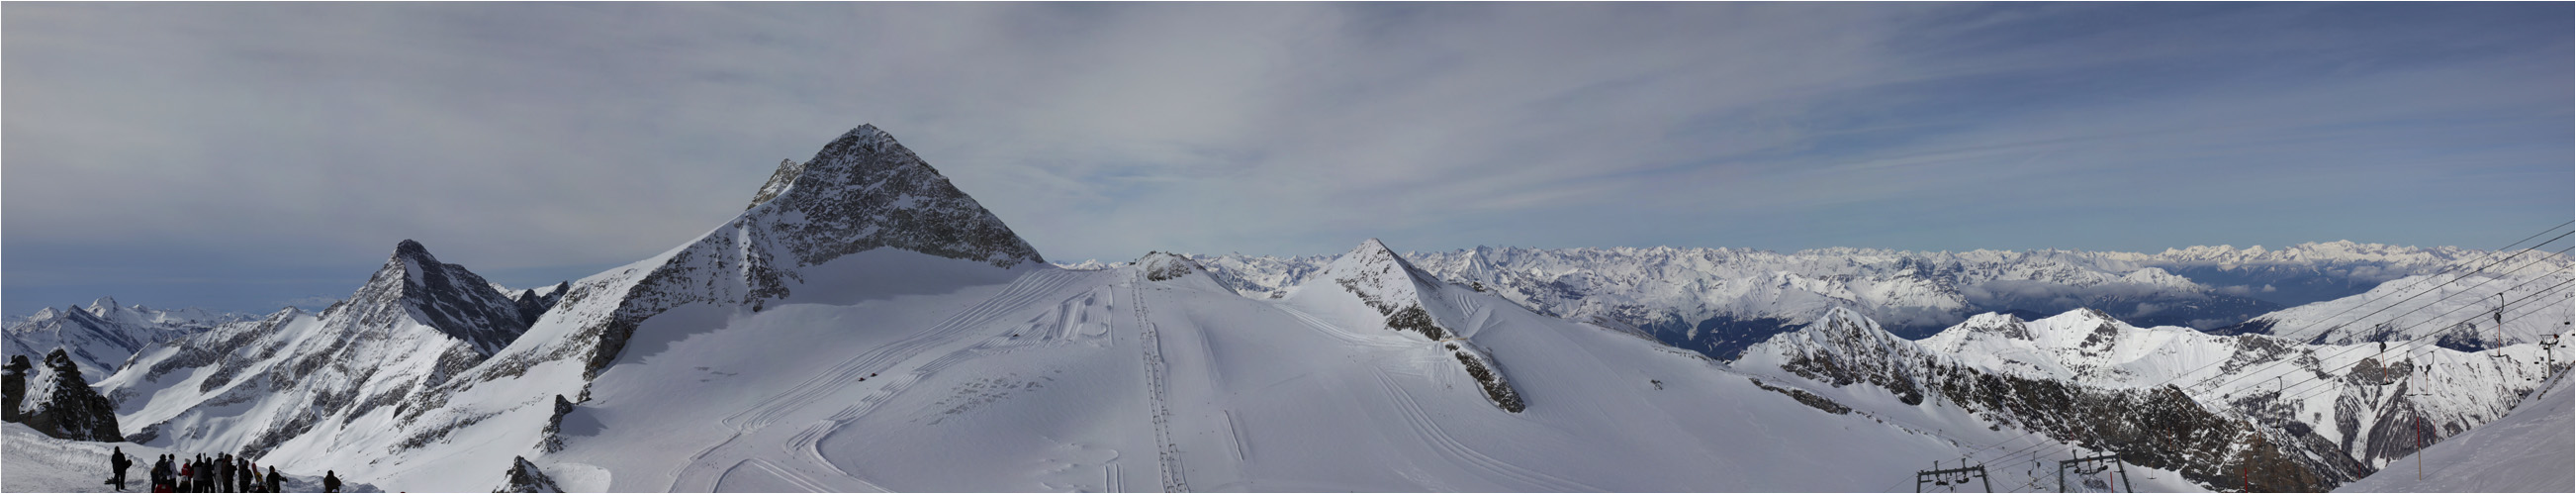 Hintertuxer Gletscher Panorama I